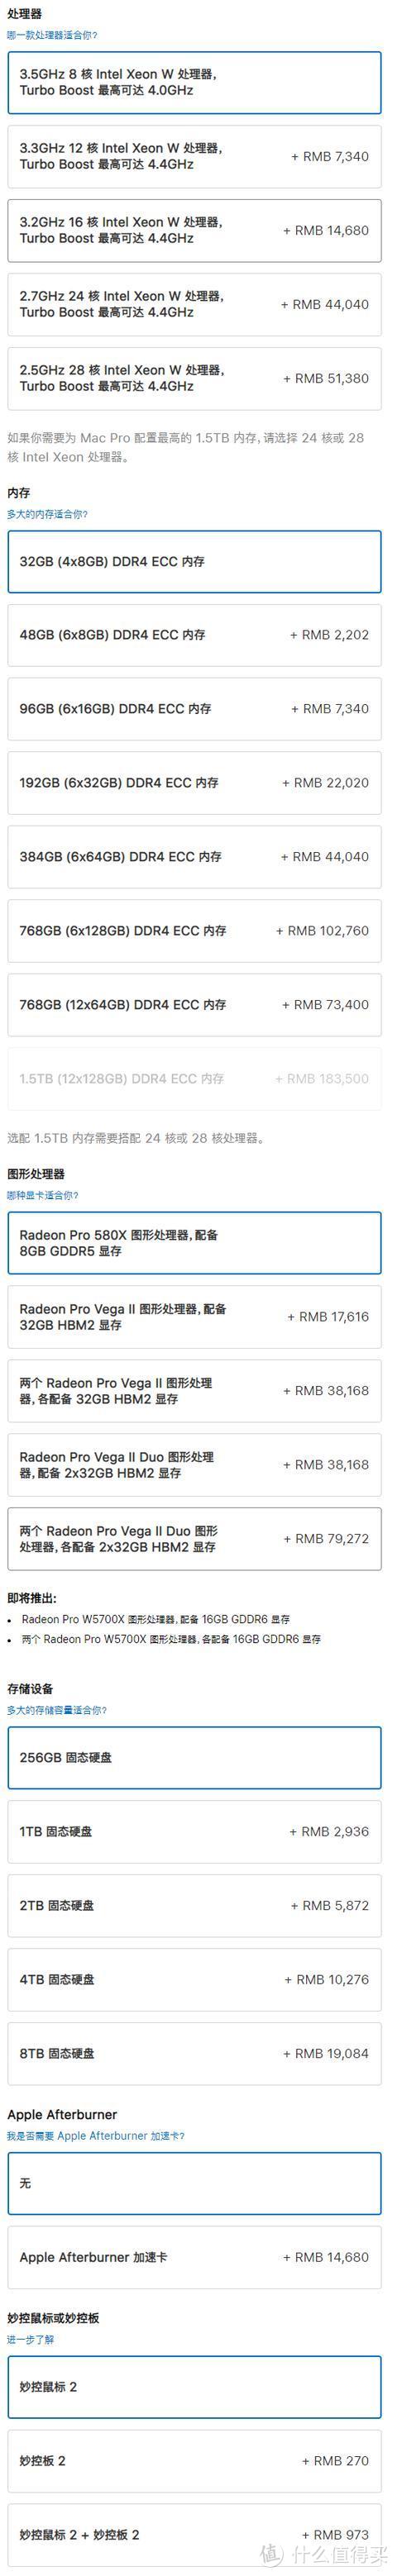 苹果机架式Mac Pro正式开售；华为手机负一屏新增支付宝集五福